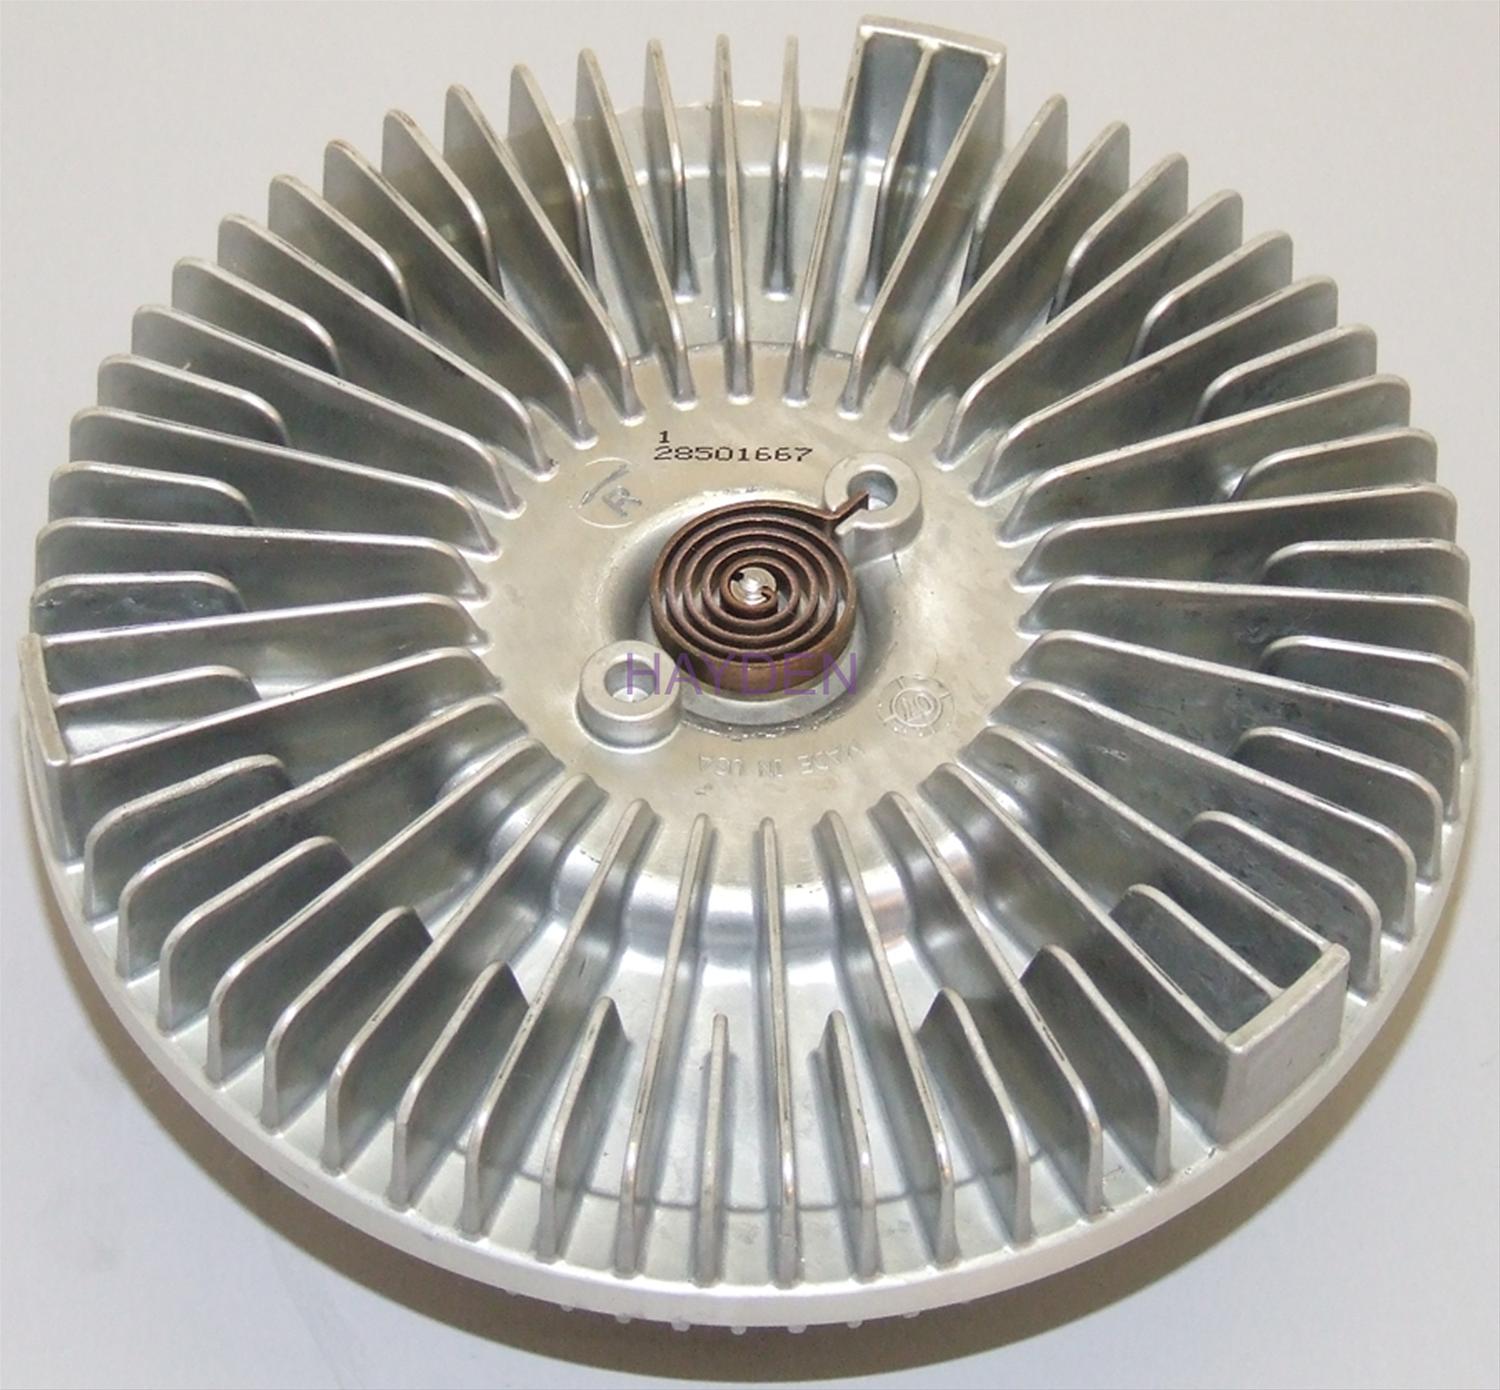 Engine Cooling Fan Clutch Hayden 2886 